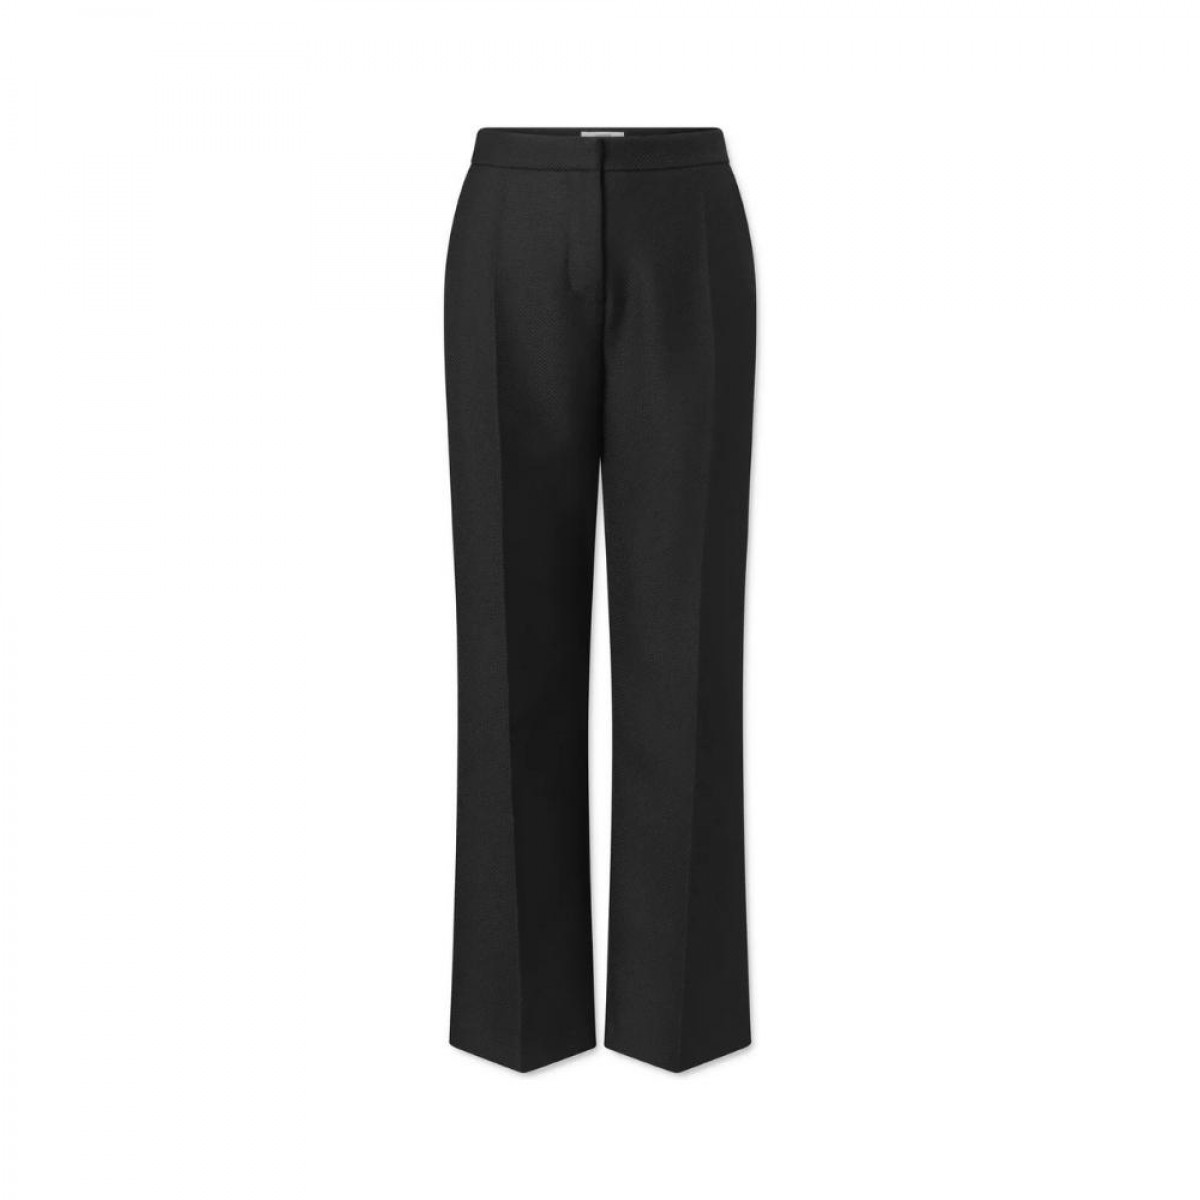 lea pants - black - front